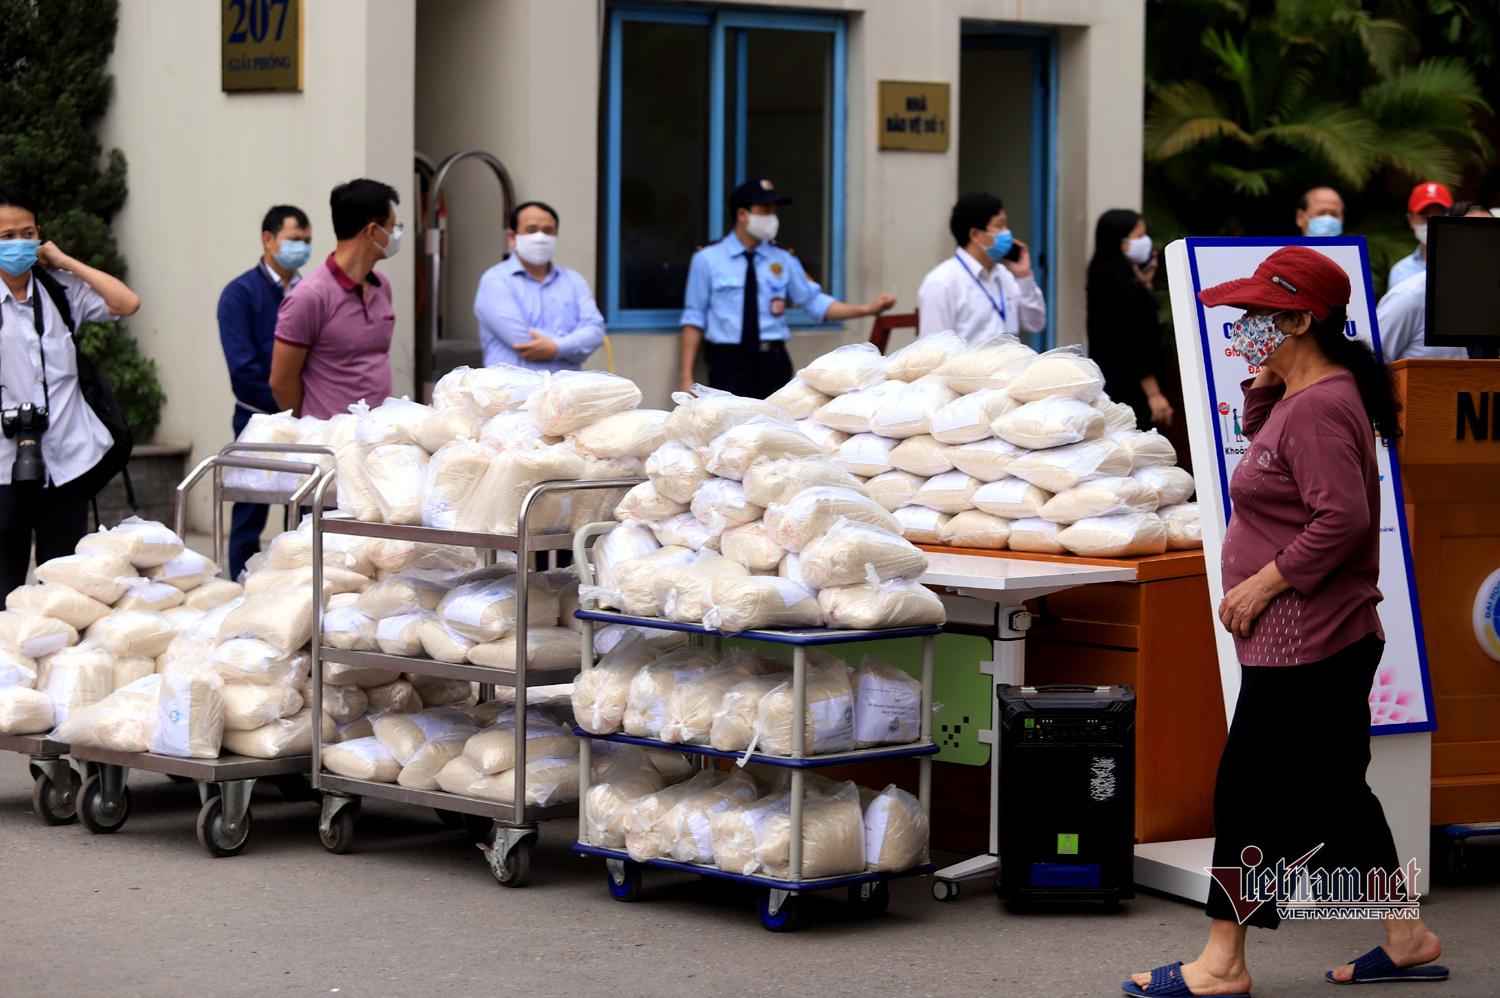 'ATM gạo' thông minh ở Hà Nội nhận diện hàng trăm khuôn mặt người tới nhận